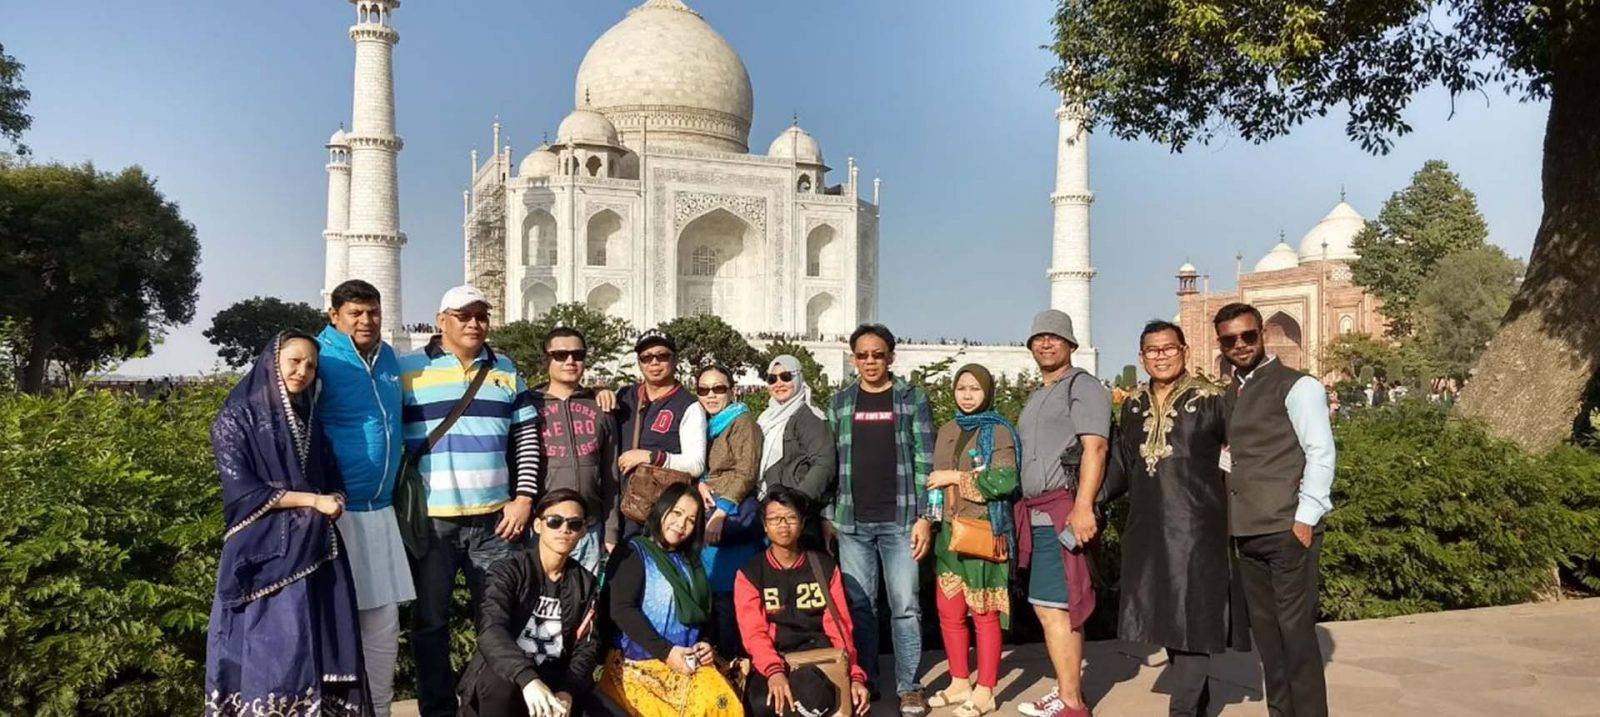 Taj Mahal Sunrise Tour from New Delhi